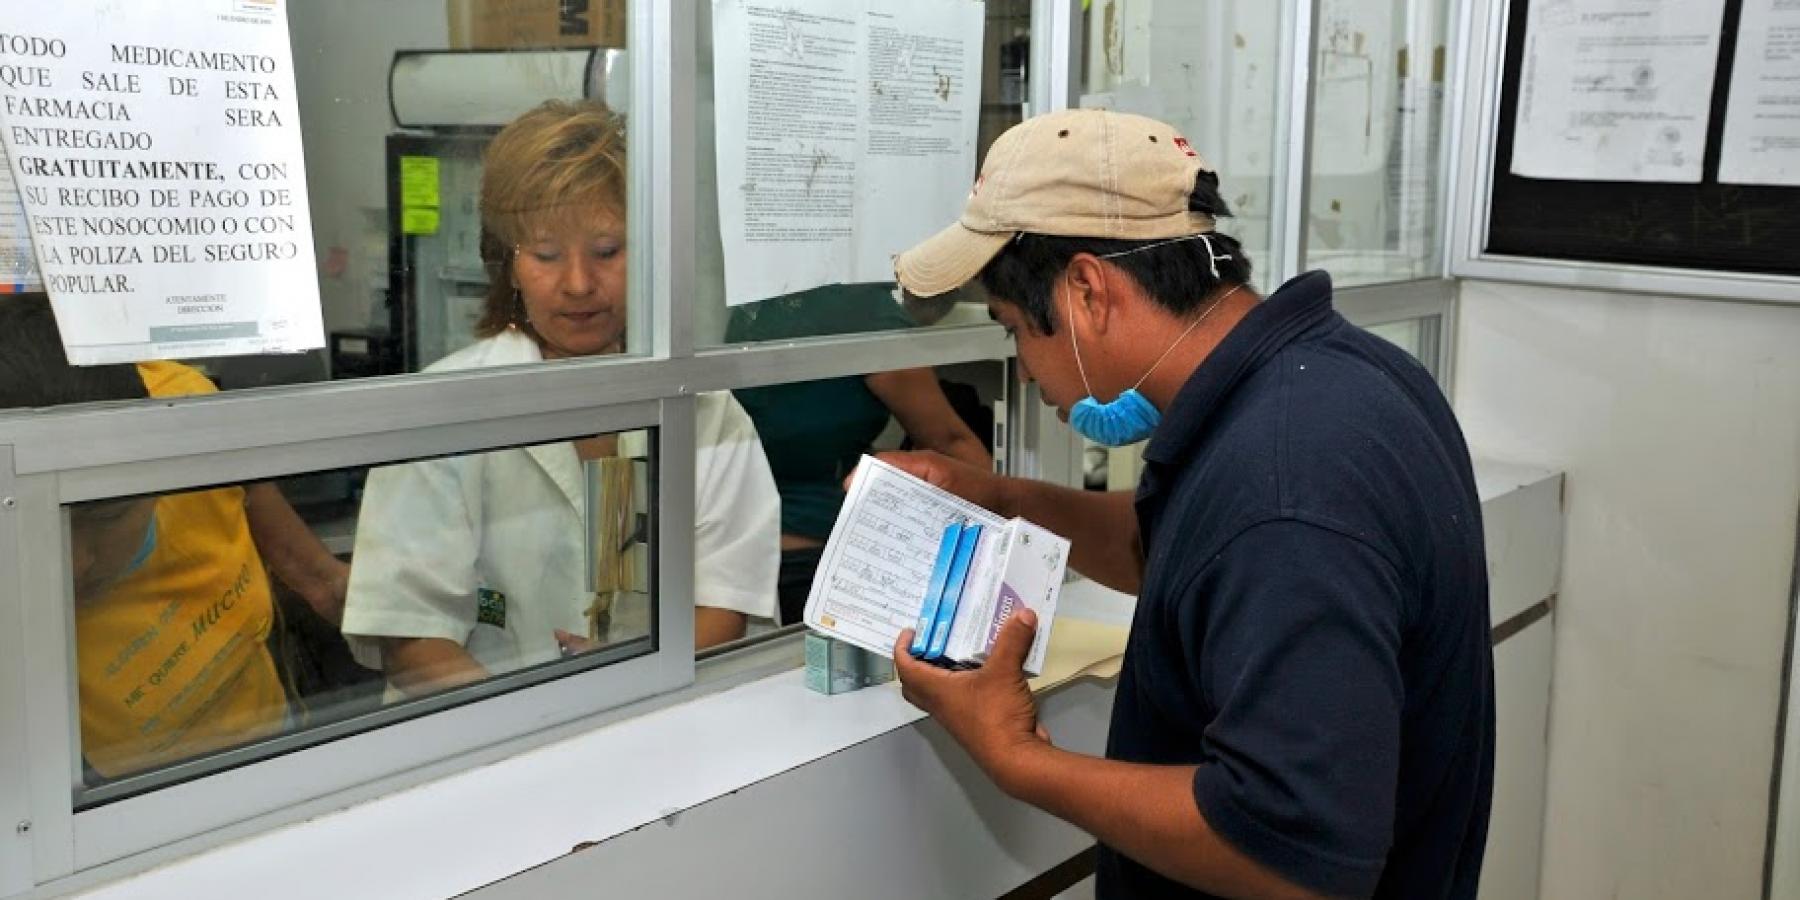 Mexico: Seguro Popular health coverage program